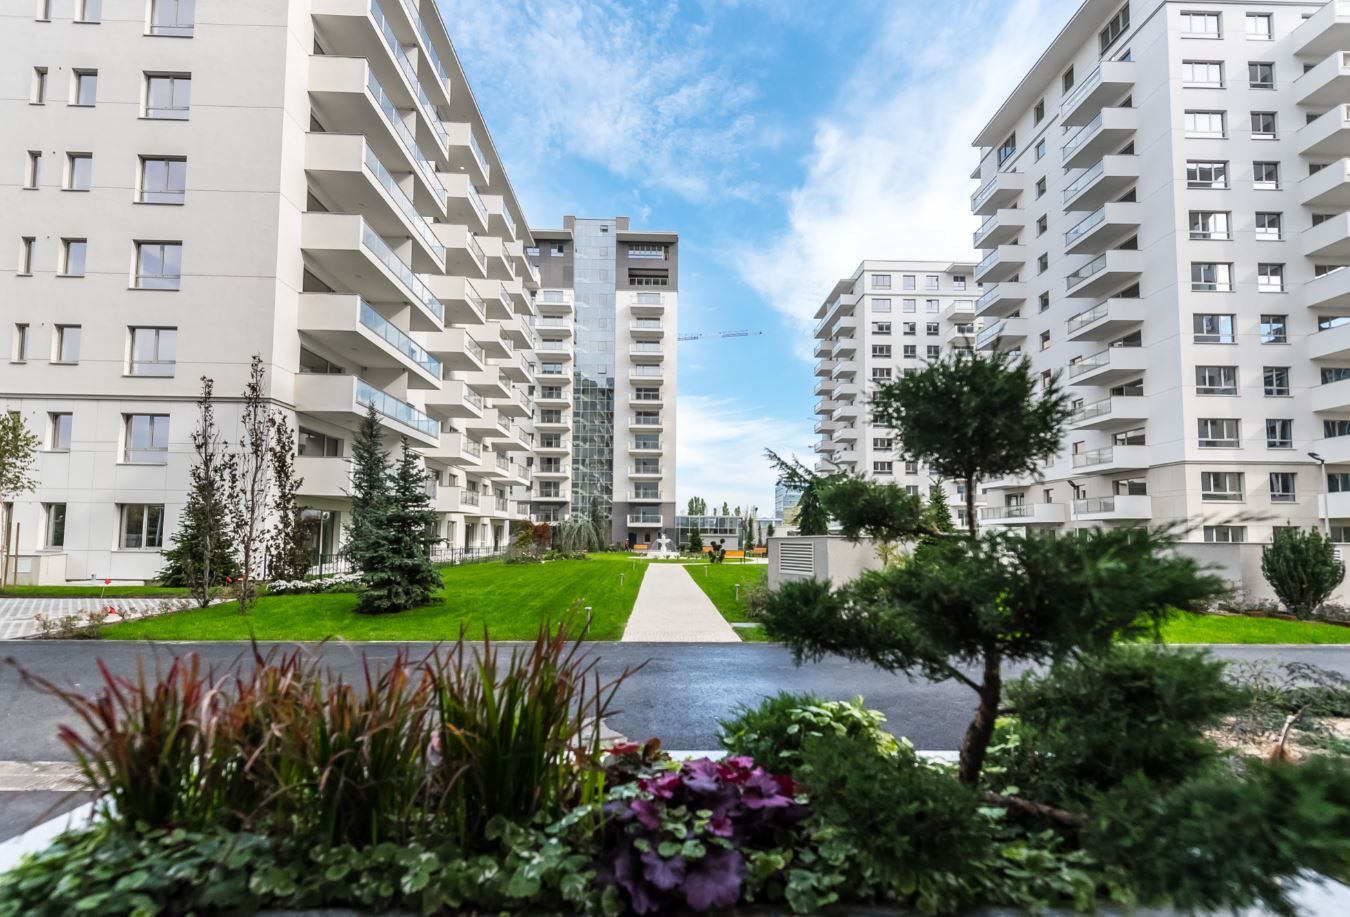 Companie de real-estate: Preţul mediu de tranzacţionare a locuinţelor a depăşit 100.000 de euro în primul semestru al anului. ”Piaţa imobiliară va rămâne stabilă”